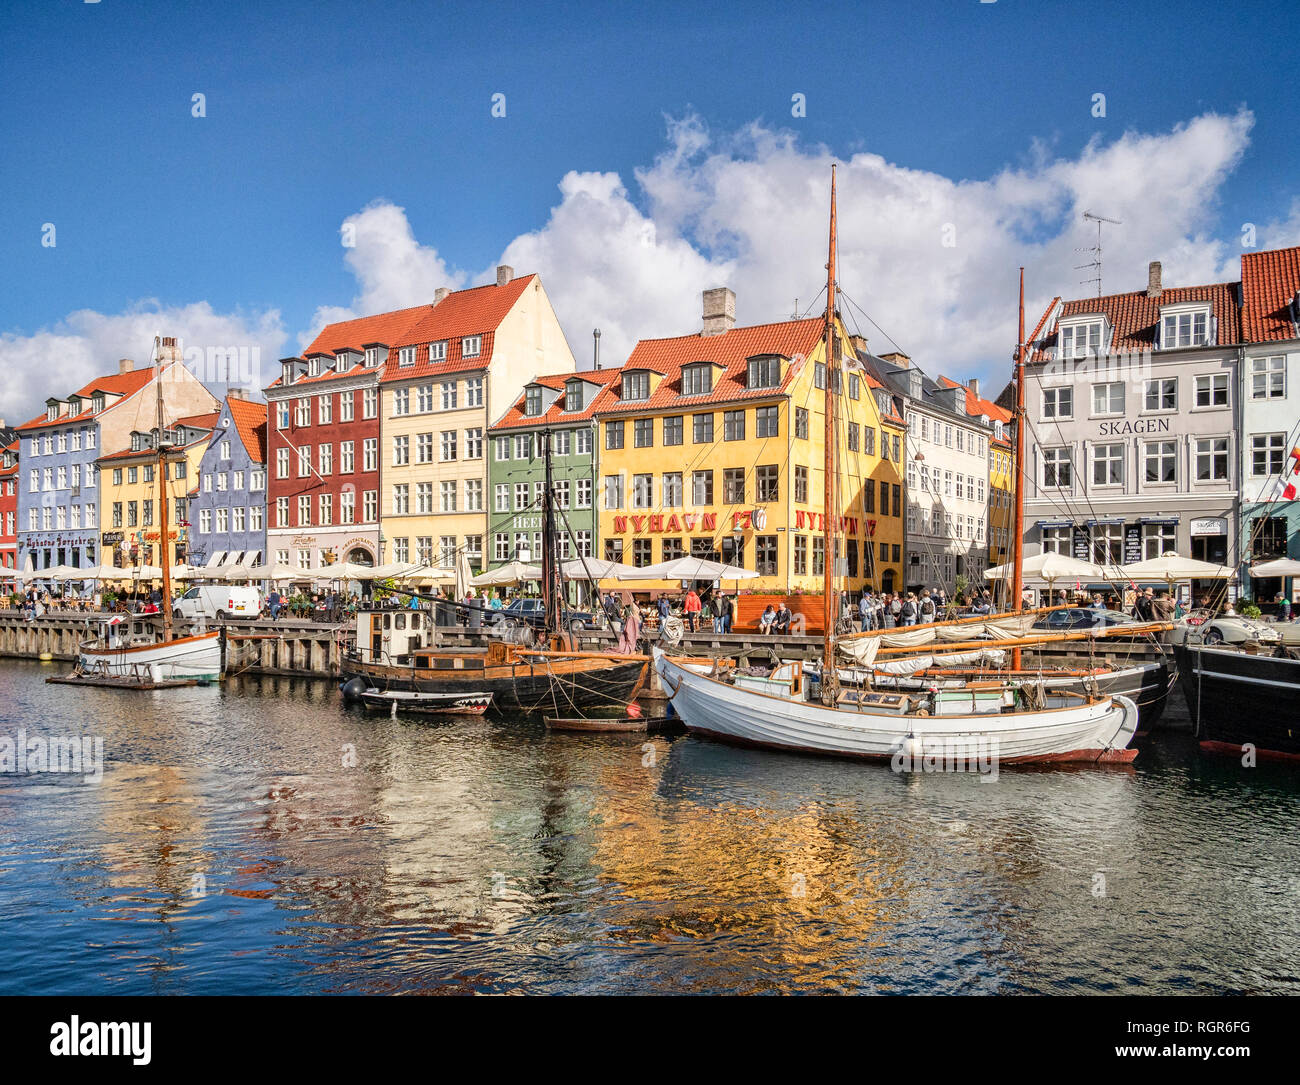 23. September 2018: Kopenhagen, Dänemark - der Uferpromenade am Nyhavn, früher ein Hafen und jetzt ein Touristen- und Freizeitbereich mit historischen... Stockfoto